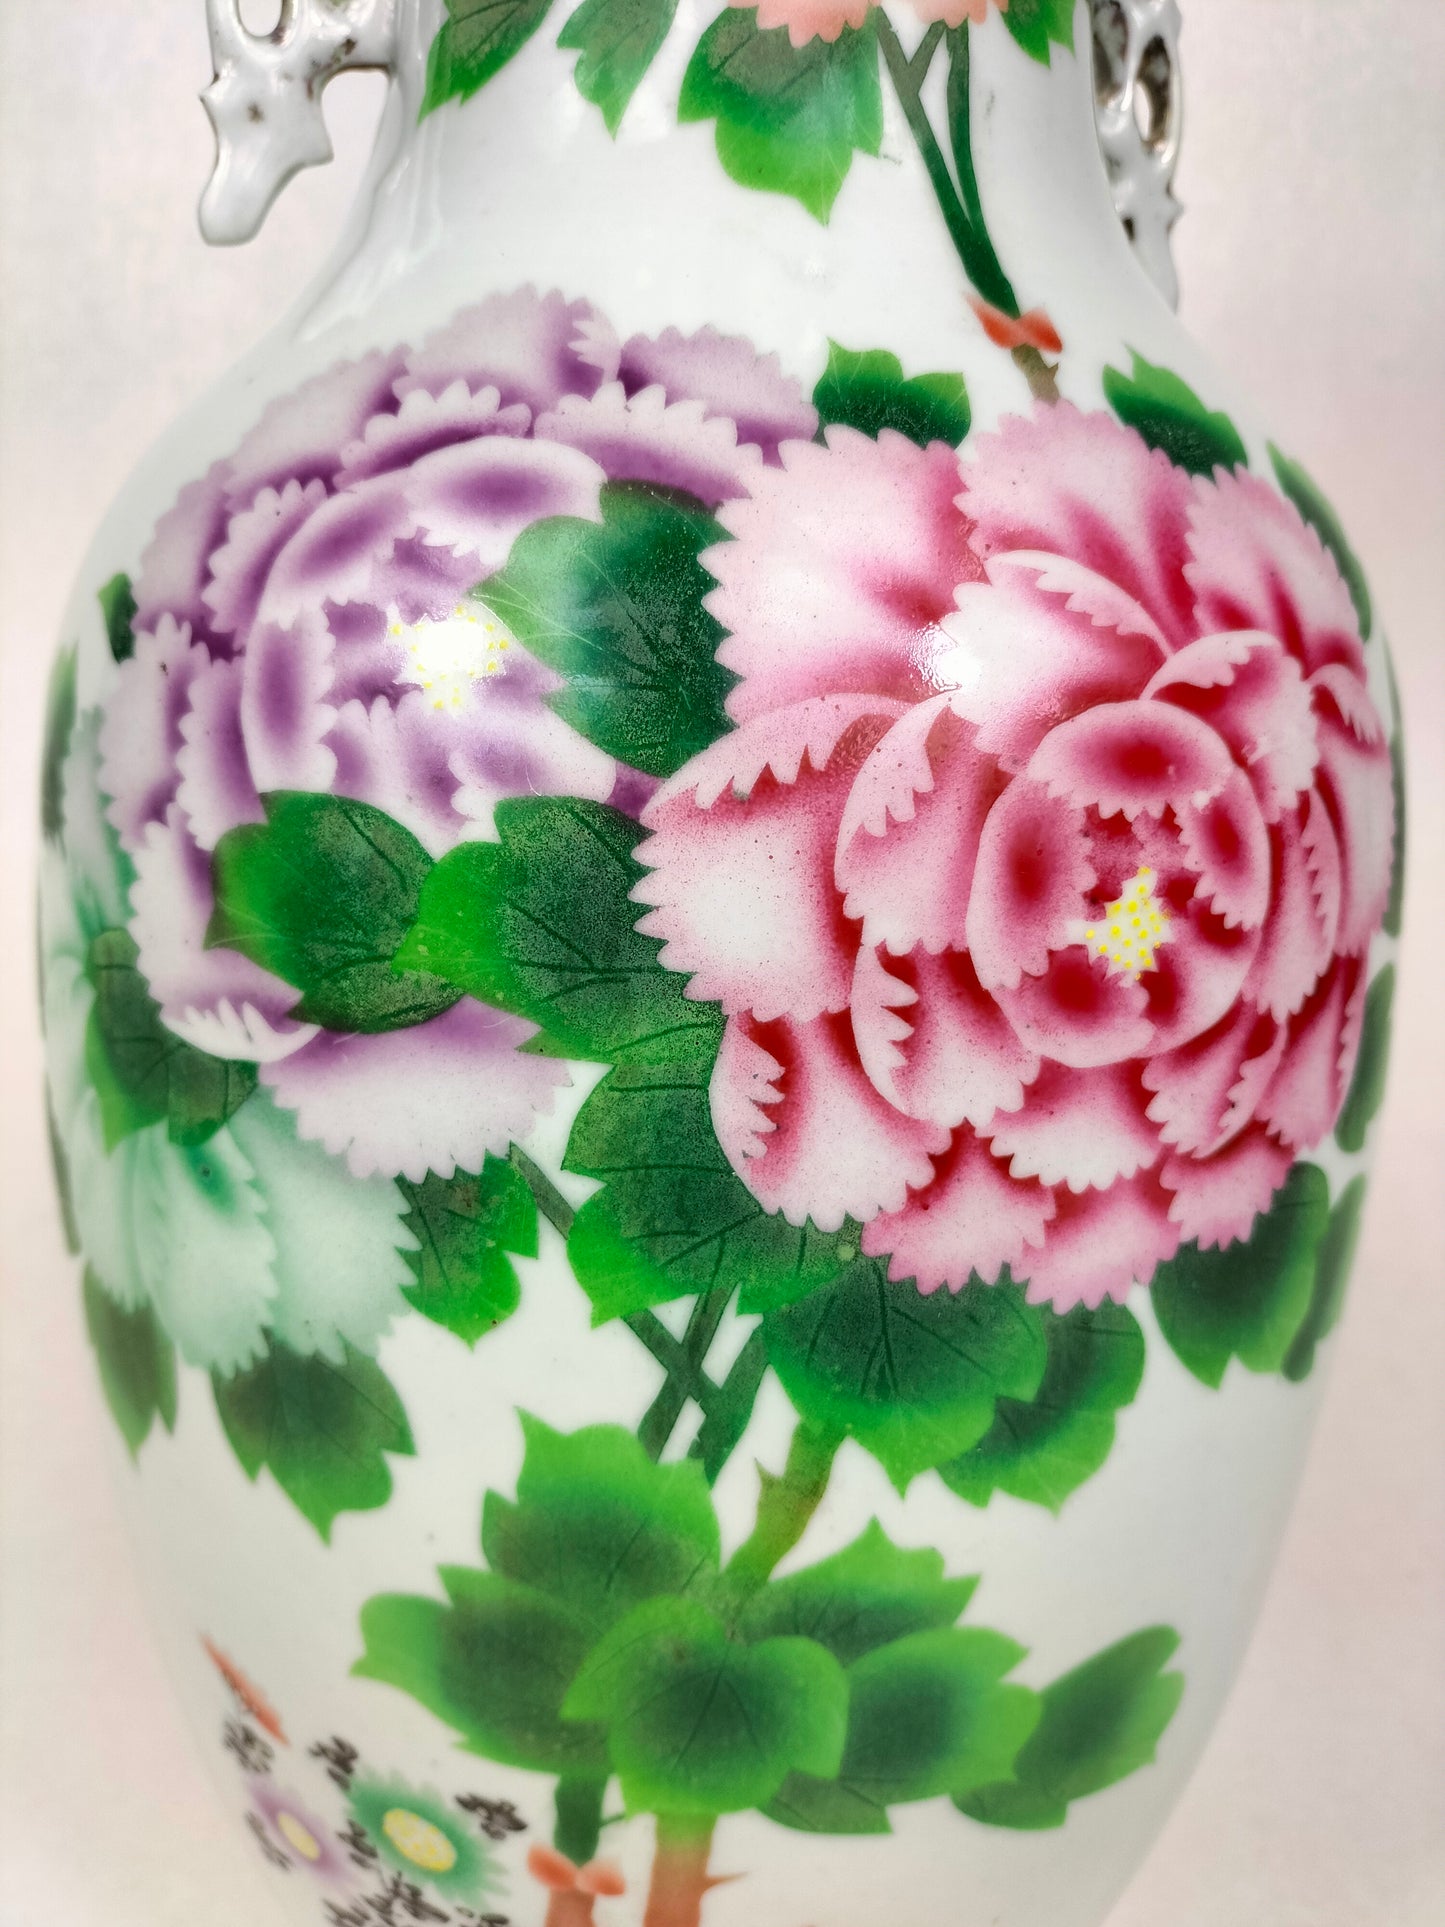 中国古董牡丹花瓶//民国时期（1912-1949）